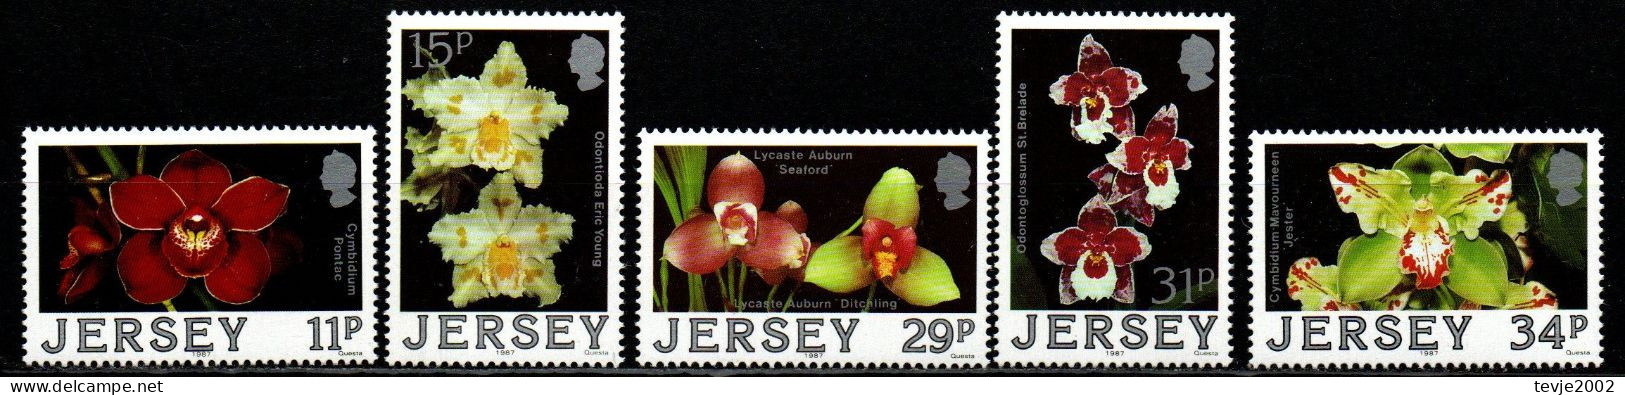 Jersey 1988 - Mi.Nr. 425 - 429 - Postfrisch MNH - Blumen Flowers Orchideen Orchids - Orchidee